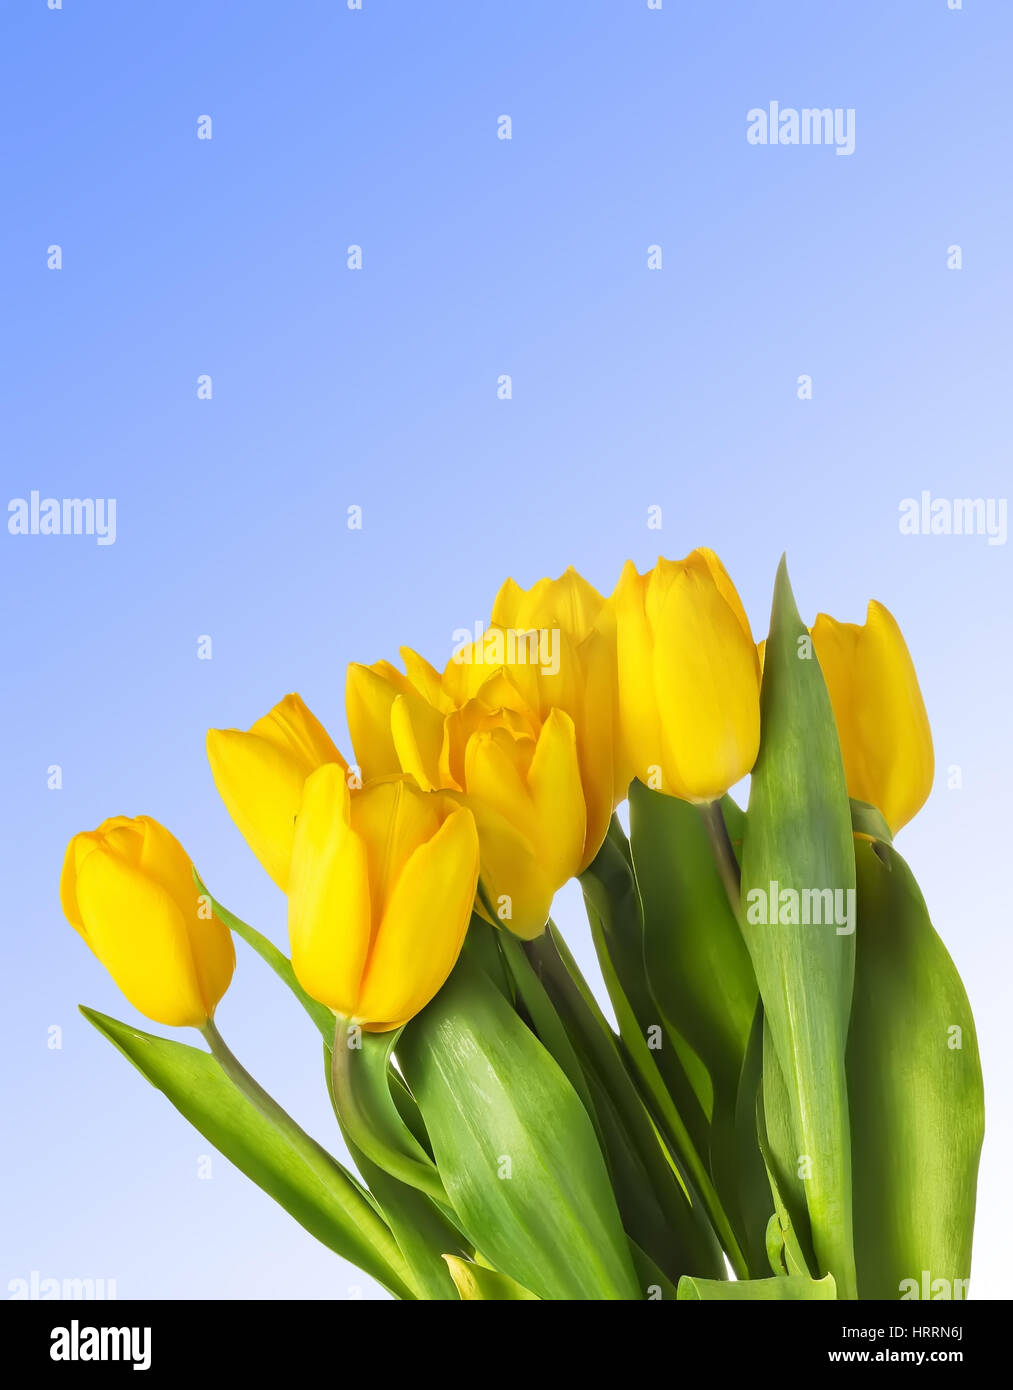 Nahaufnahme von gelben Tulpen auf blauem Hintergrund. Frühling Hintergrund mit gelben Blüten. Freiraum für Text auf blauem Himmelshintergrund. Gruppe von Tulpen mit Stockfoto